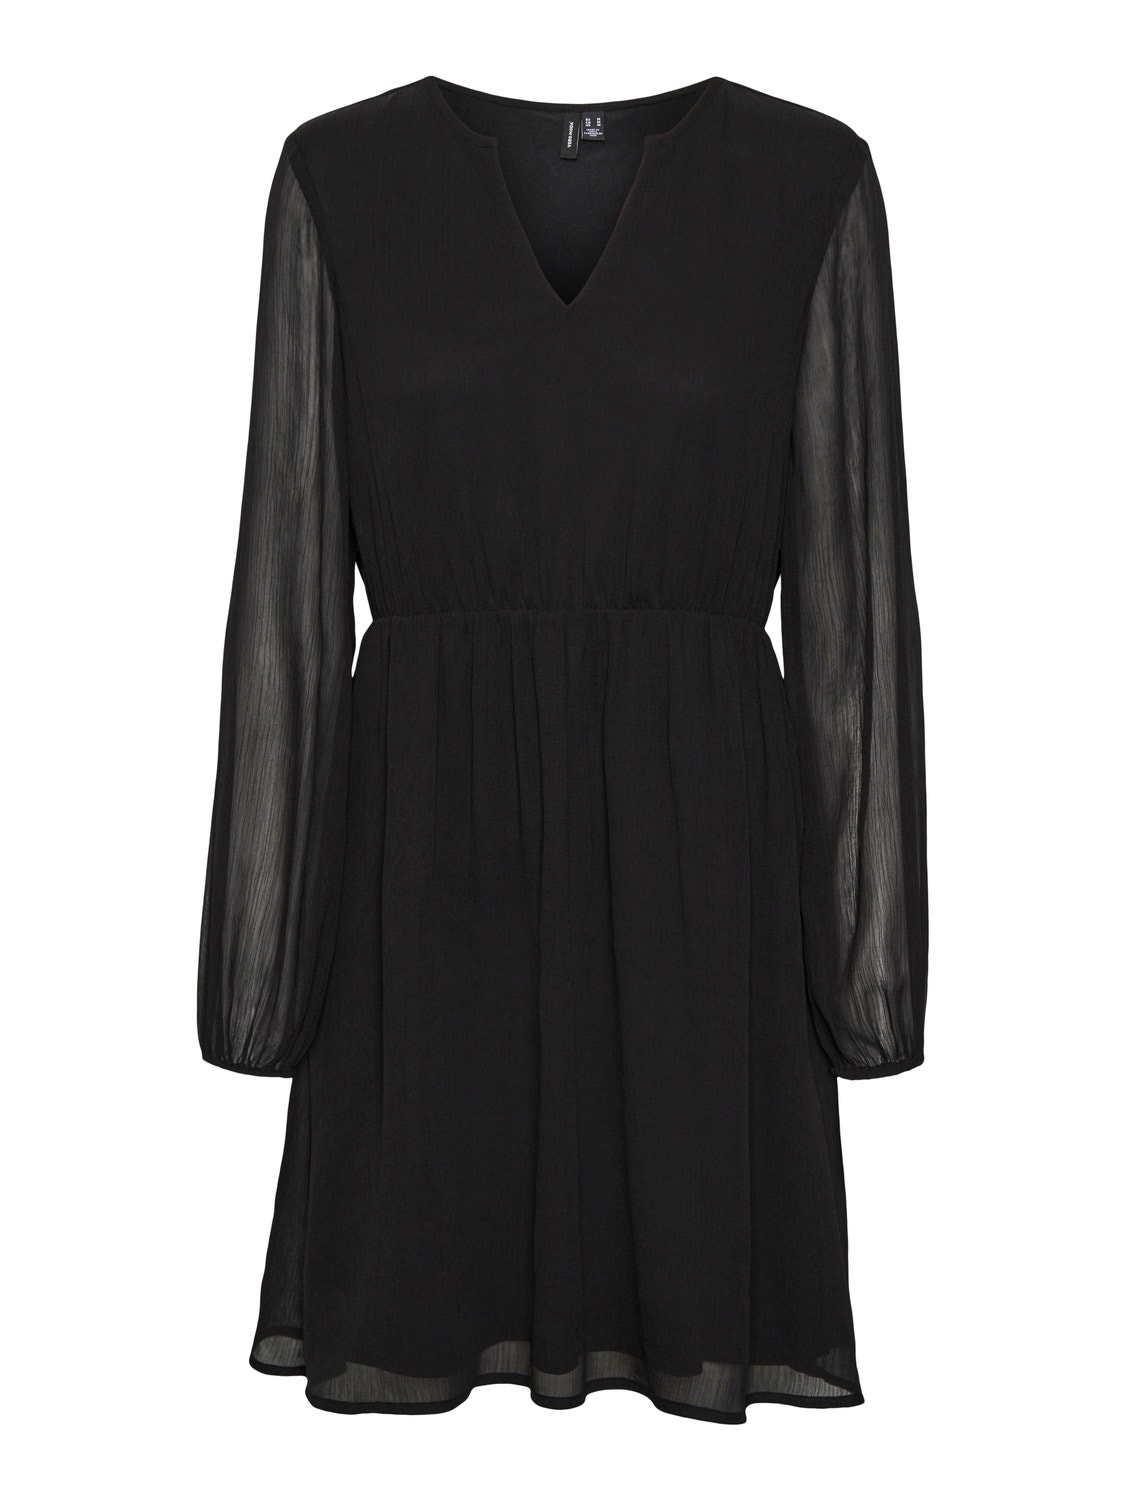 Vero Moda VMVILLA Short dress -Black - 10305309